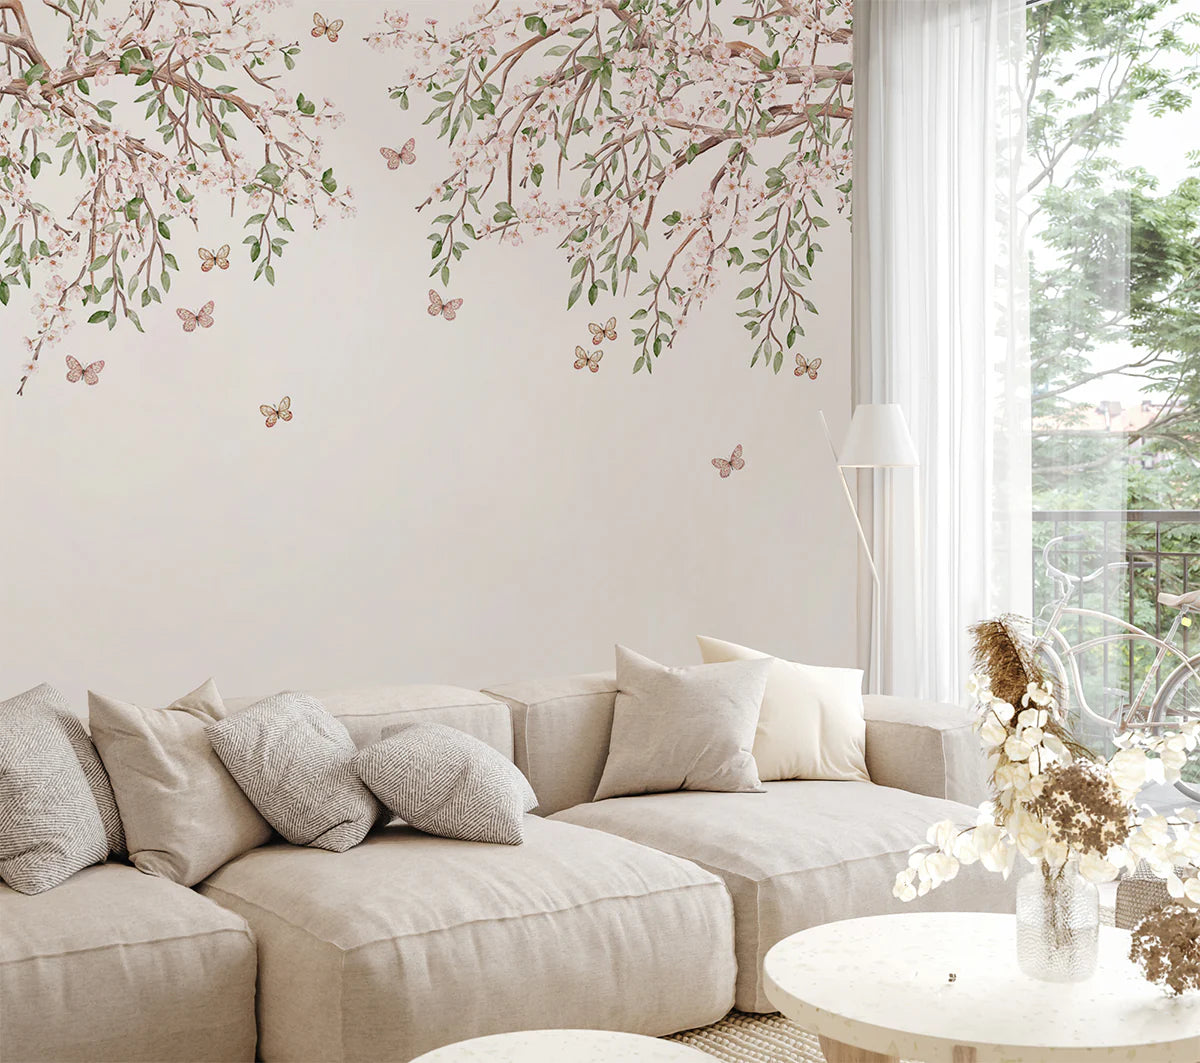 Full in Bloom, Floral Mural Wallpaper in living room